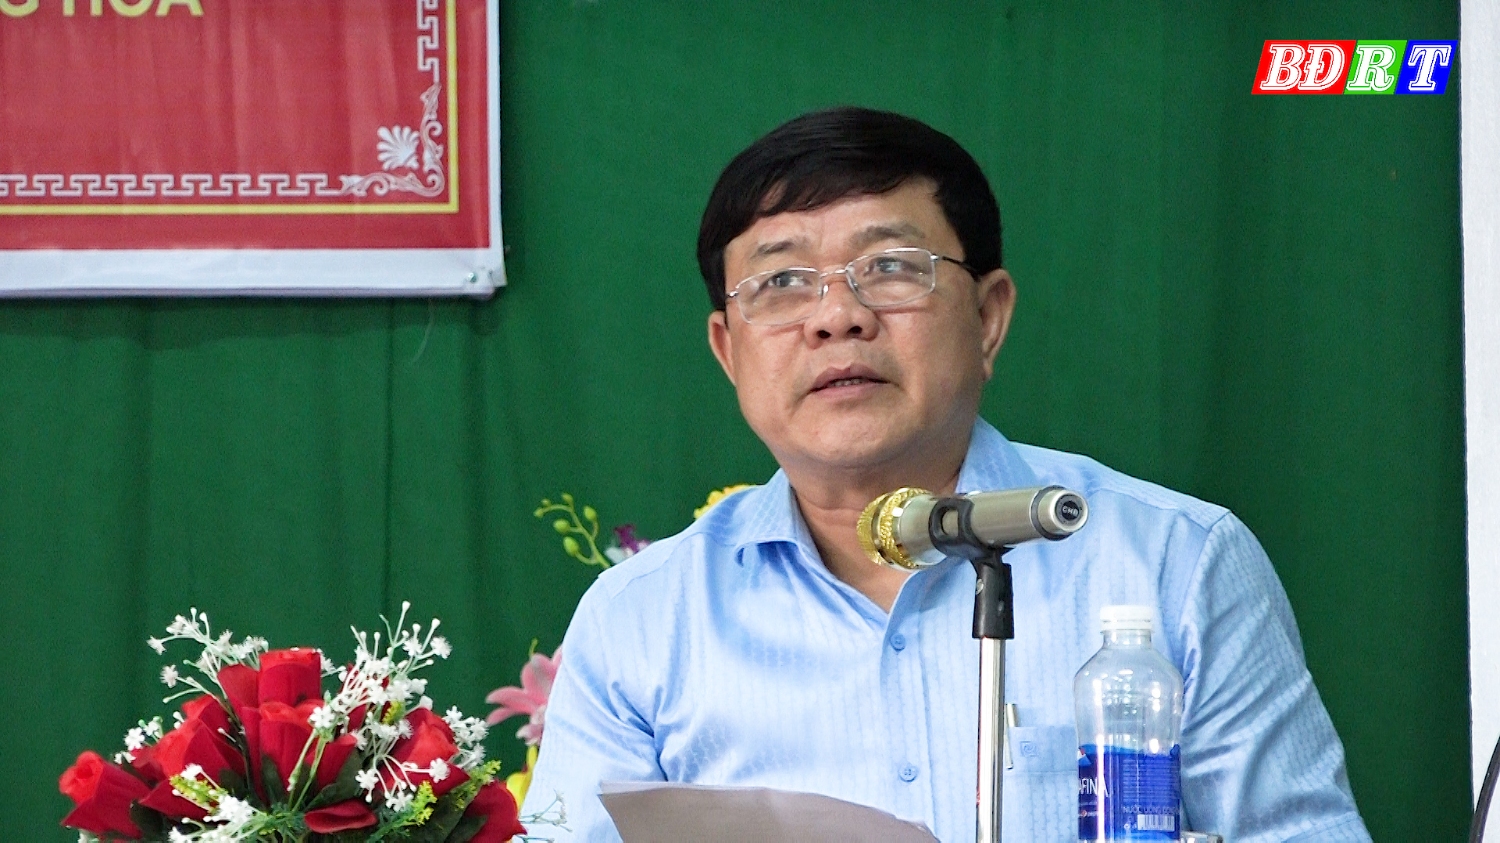 Đồng chí Đoàn Minh Thọ Phó Bí thư Thị ủy Chủ tịch UBND thị xã phát biểu tại ngày hội